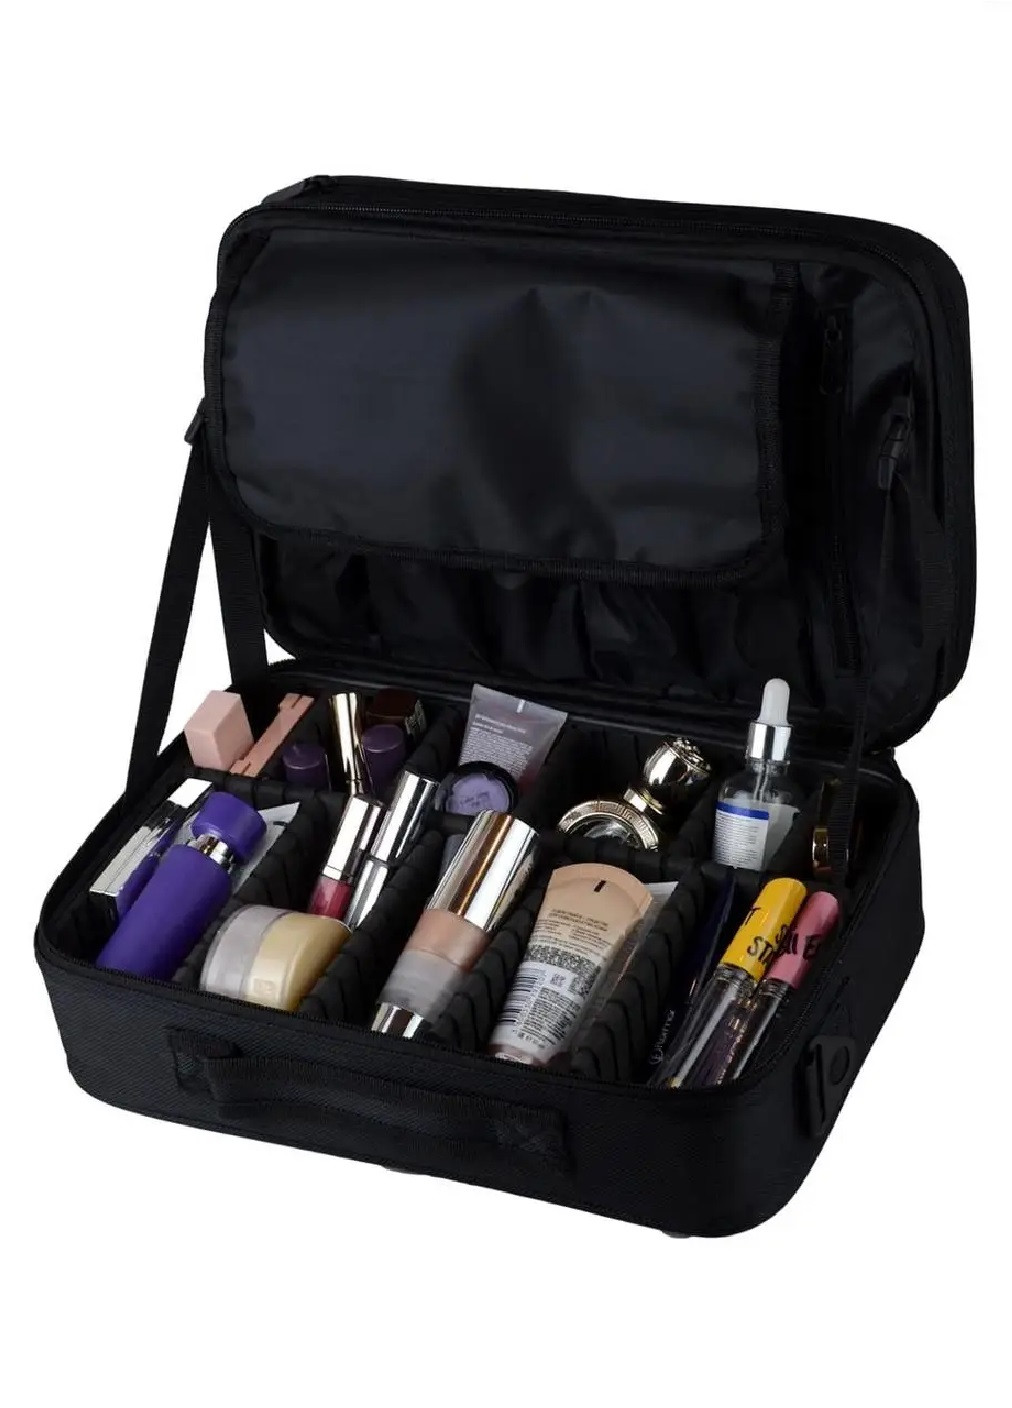 Органайзер бокс бьюти кейс косметичка чемоданчик сумка для хранения косметики и аксессуаров 33х22х11 см (474700-Prob) Черный Unbranded (259443742)